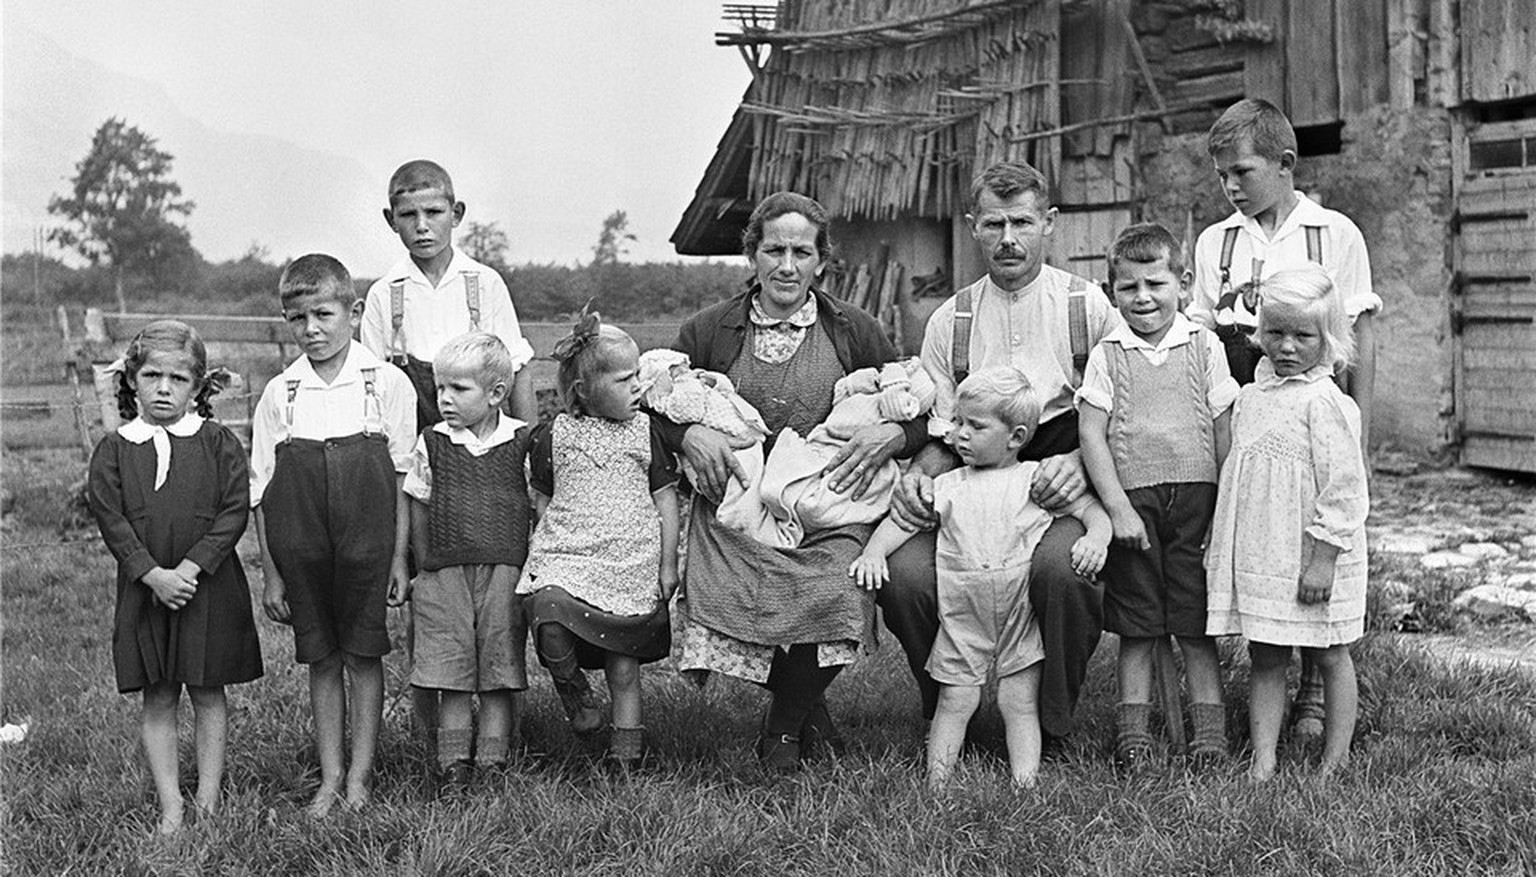 Früher war alles grösser: Die Familie Stadler posiert am 27. Juni 1942 auf ihrem Hof in Attinghausen, Kanton Uri, für den Fotografen.